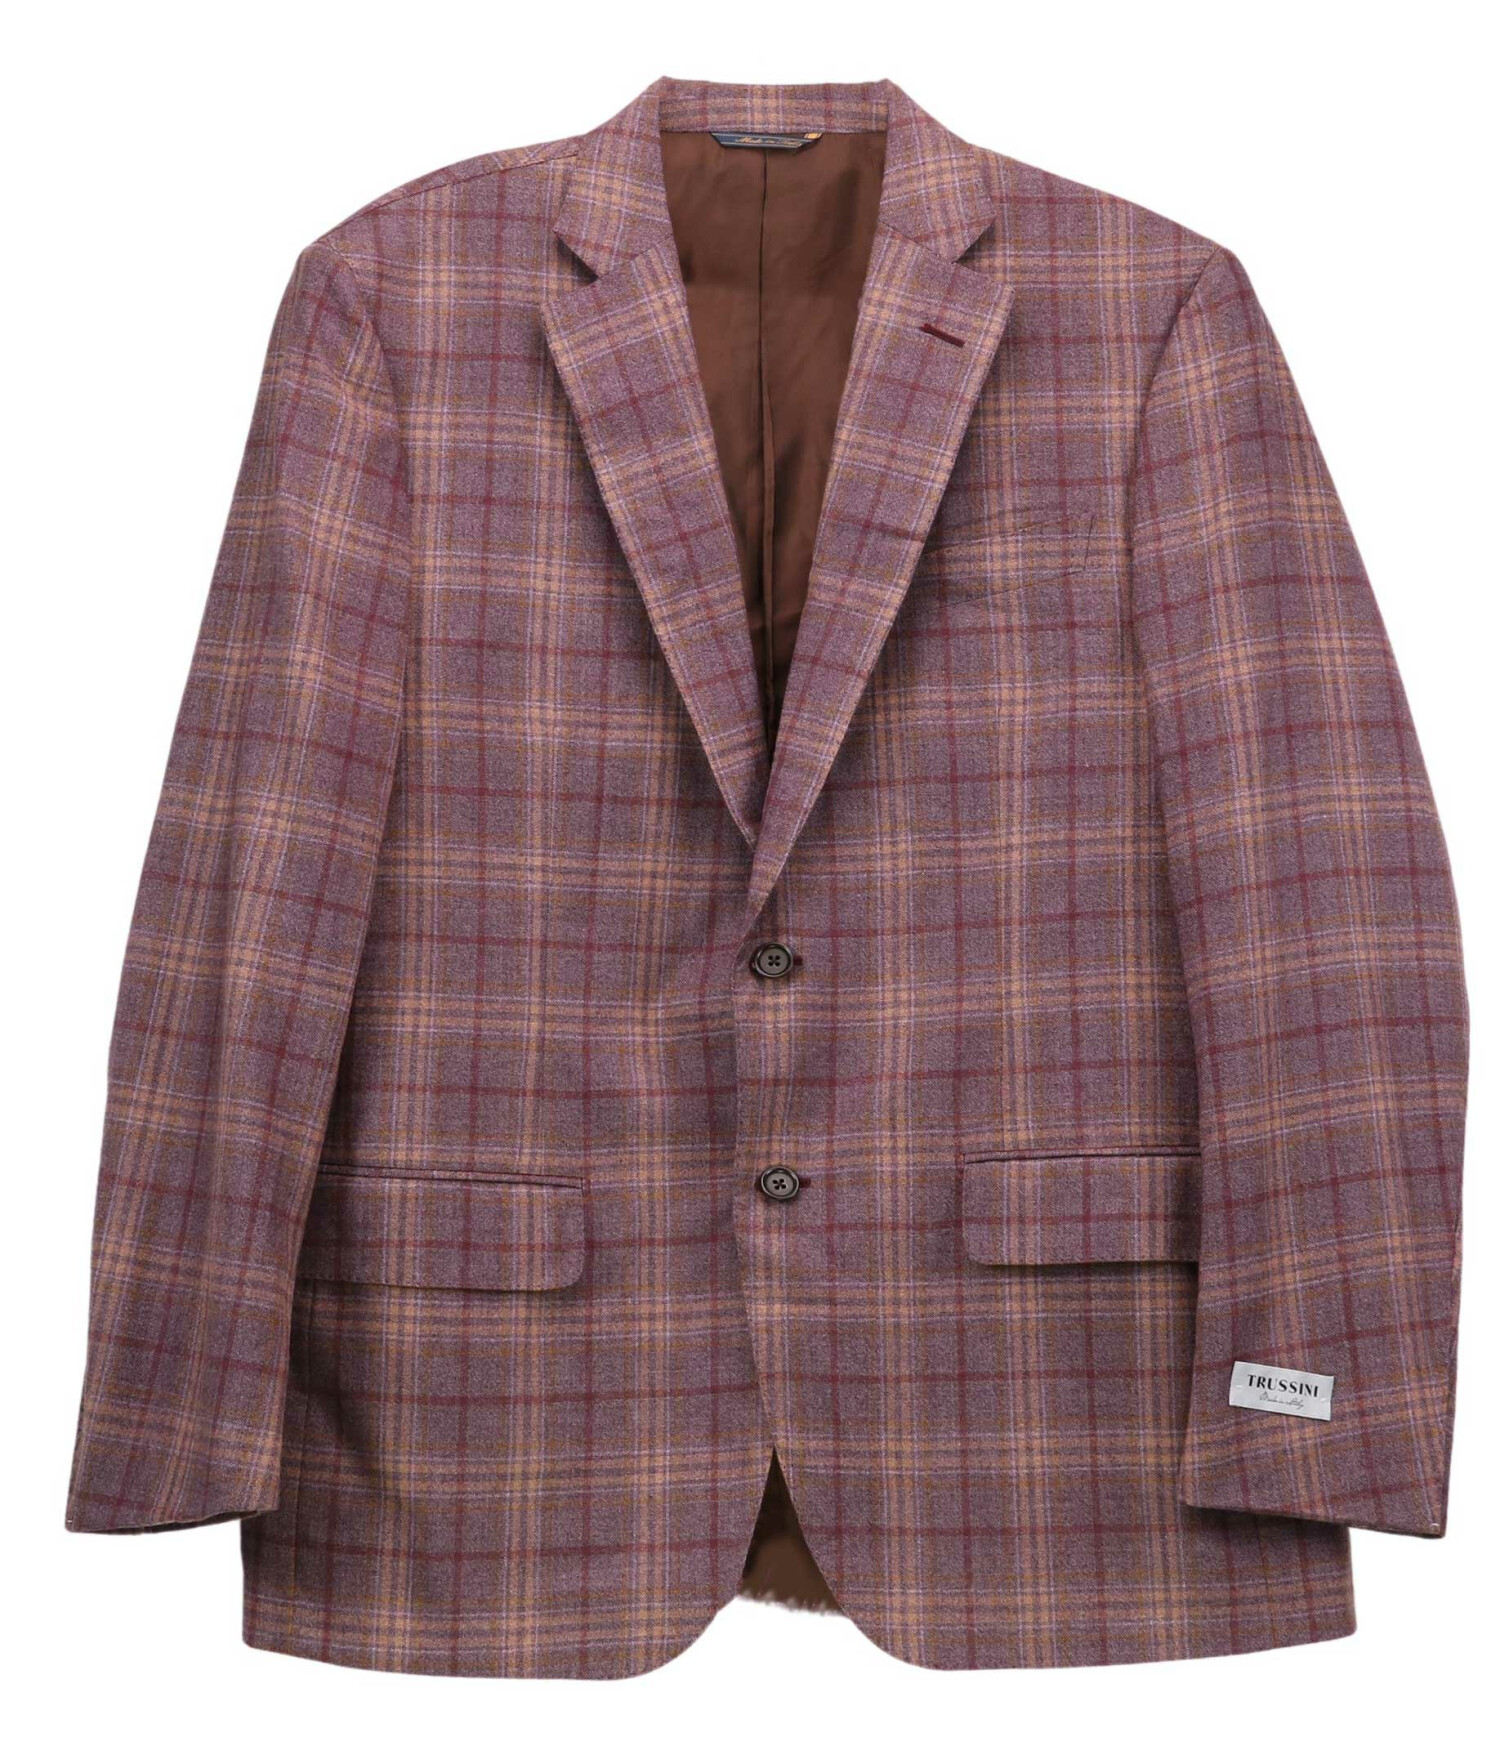 Trussini Men's Wool Sport Blazer Coats メンズ Suit Jacket